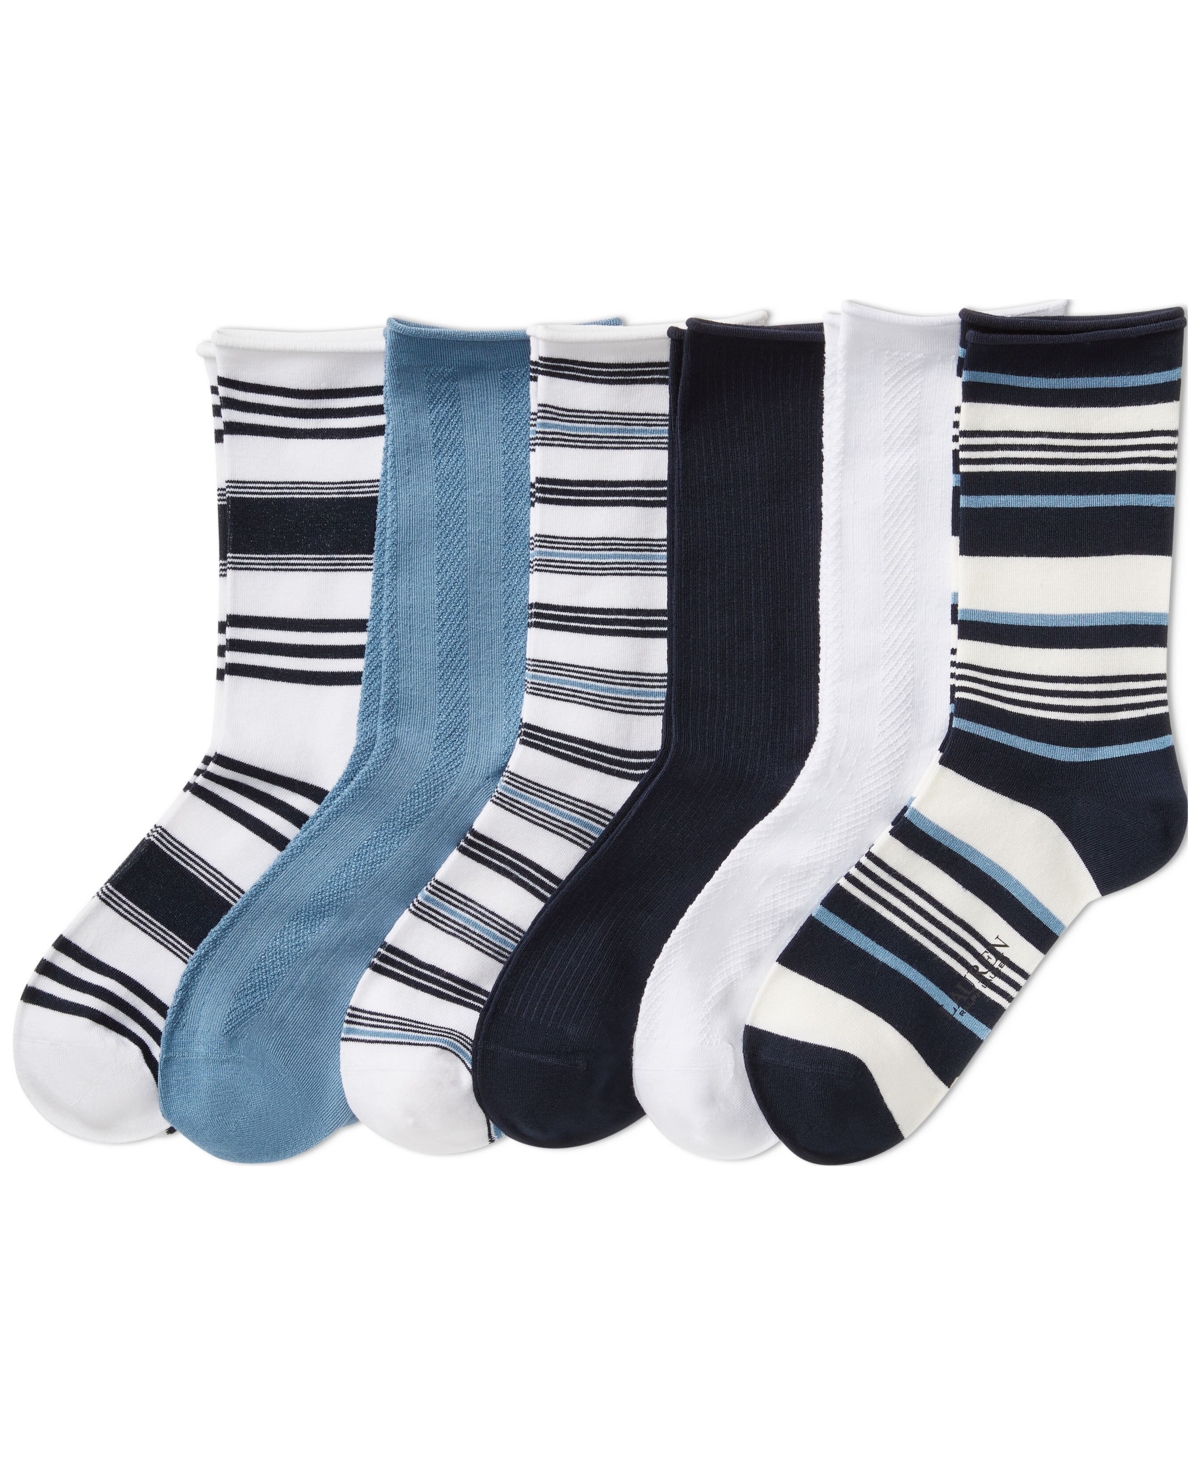 Lauren Ralph Lauren Women's 6-pk. Striped Roll-top Socks In Assorted